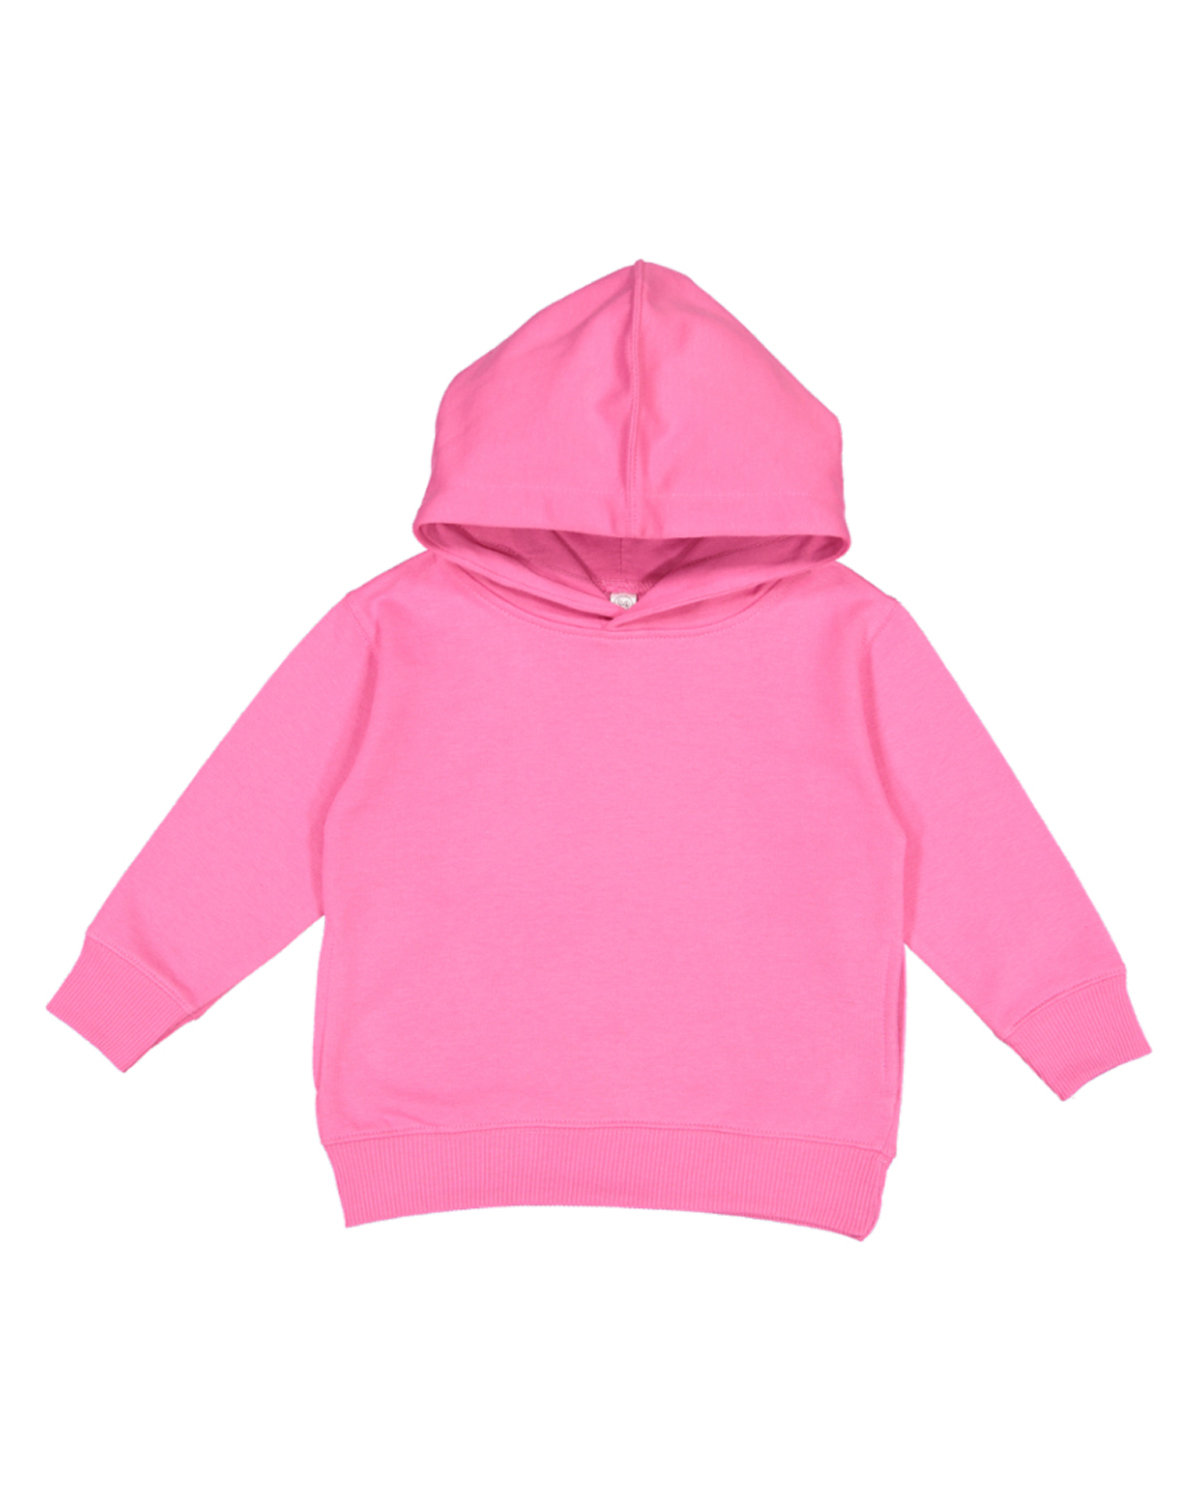 Rabbit Skins Hooded Sweatshirt 4T 5/6 Hoody Hoodie Toddler Size 2T 3326